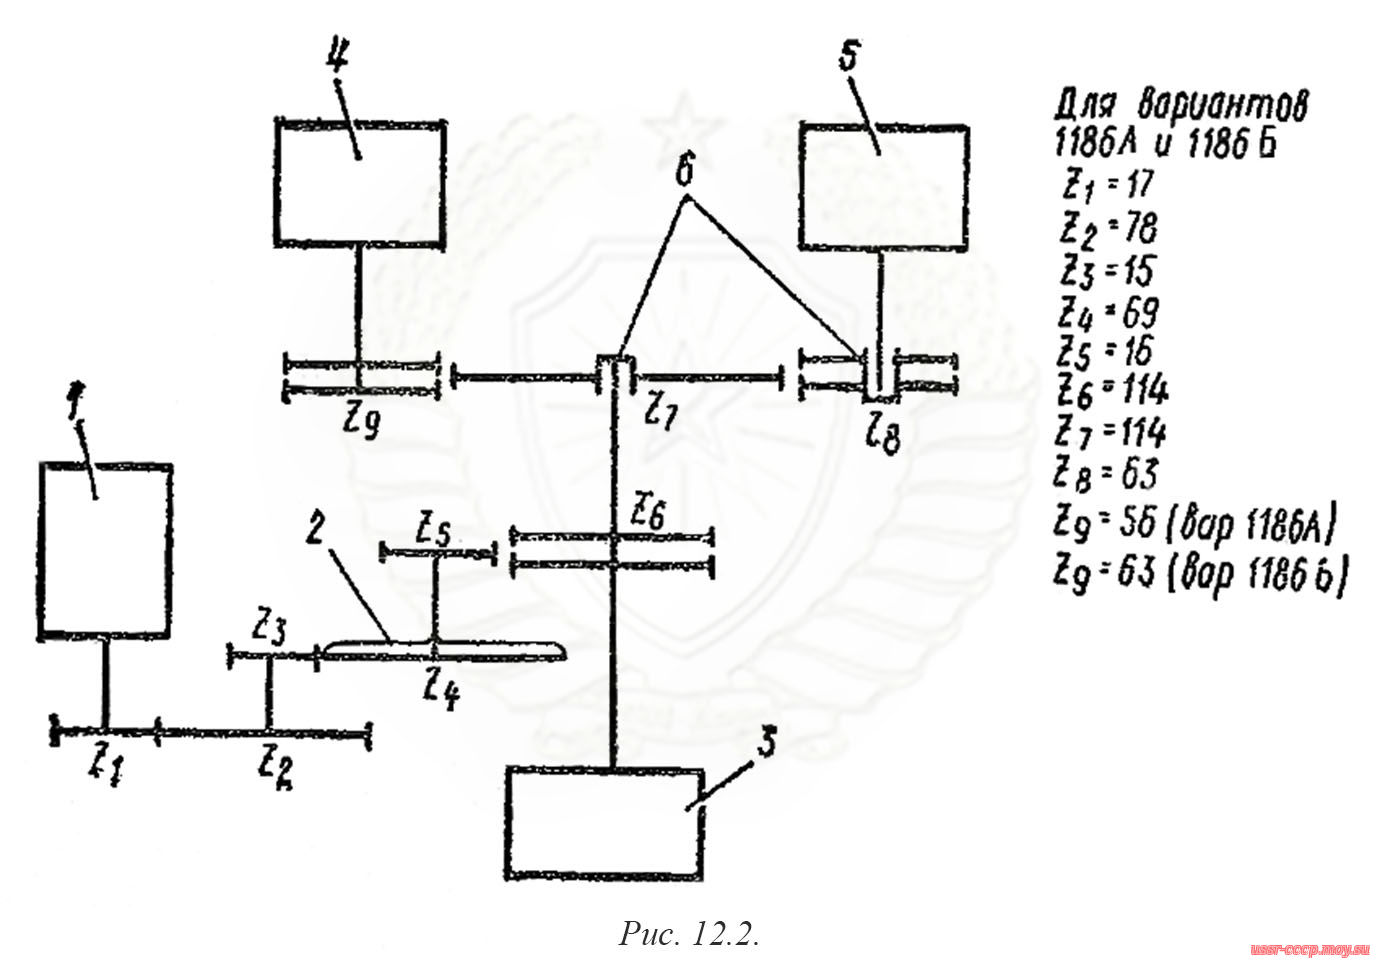 Рис. 12.2. Кинематическая схема распределителя сигналов РСАГ-1186А.